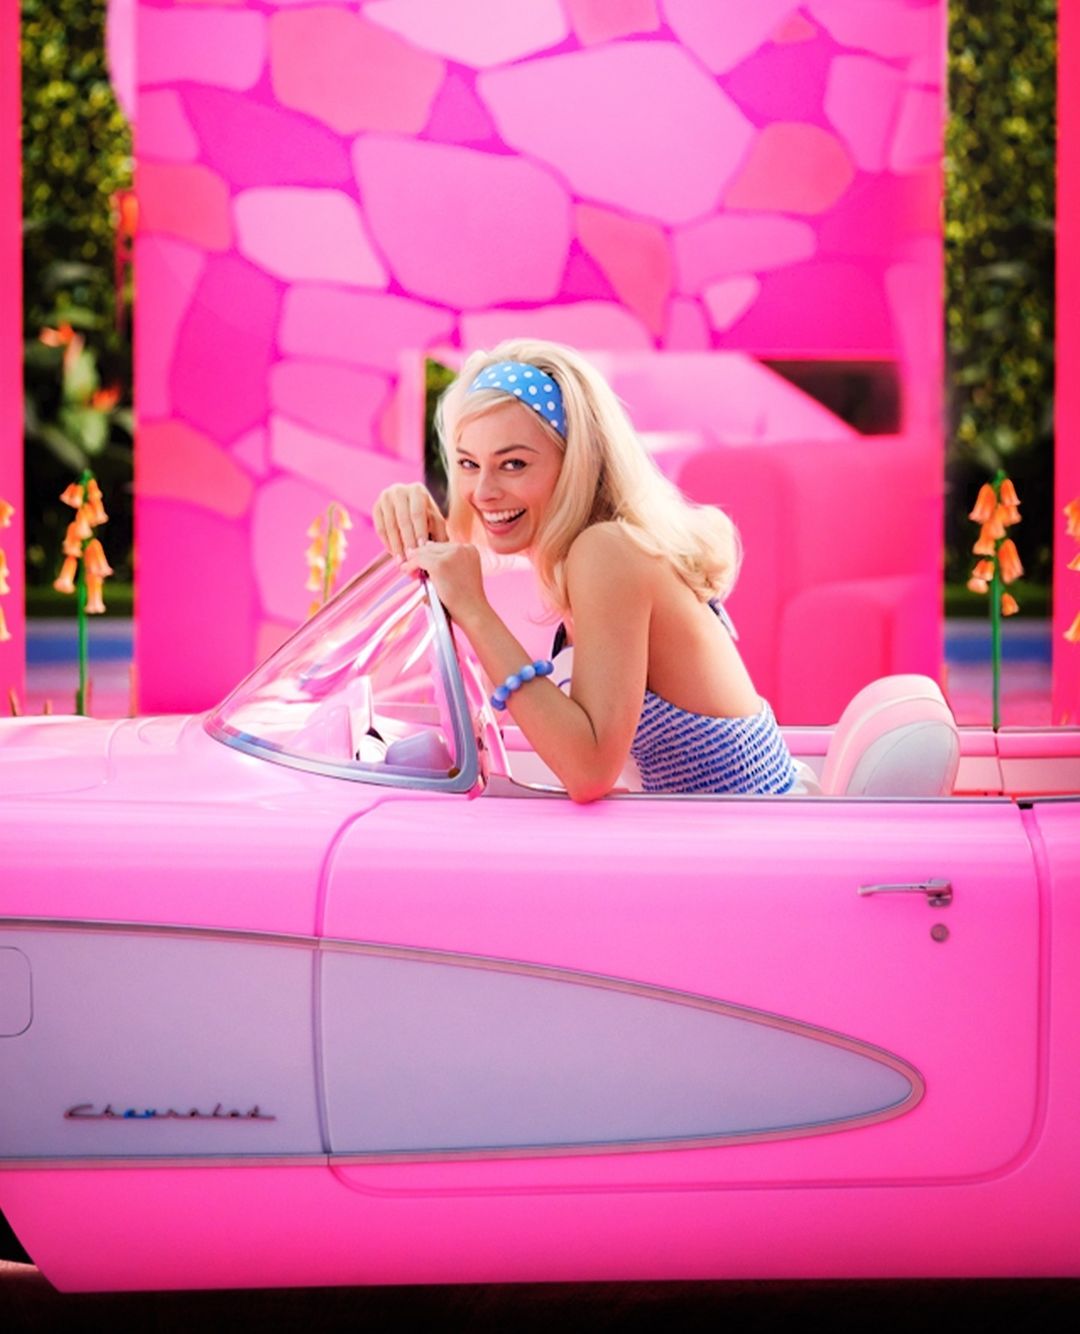 kaltak | Ryan Gosling'in 'Barbie' filmindeki Ken rolündeki ilk fotoğrafı: Seviyor musun, nefret mi ediyorsun?